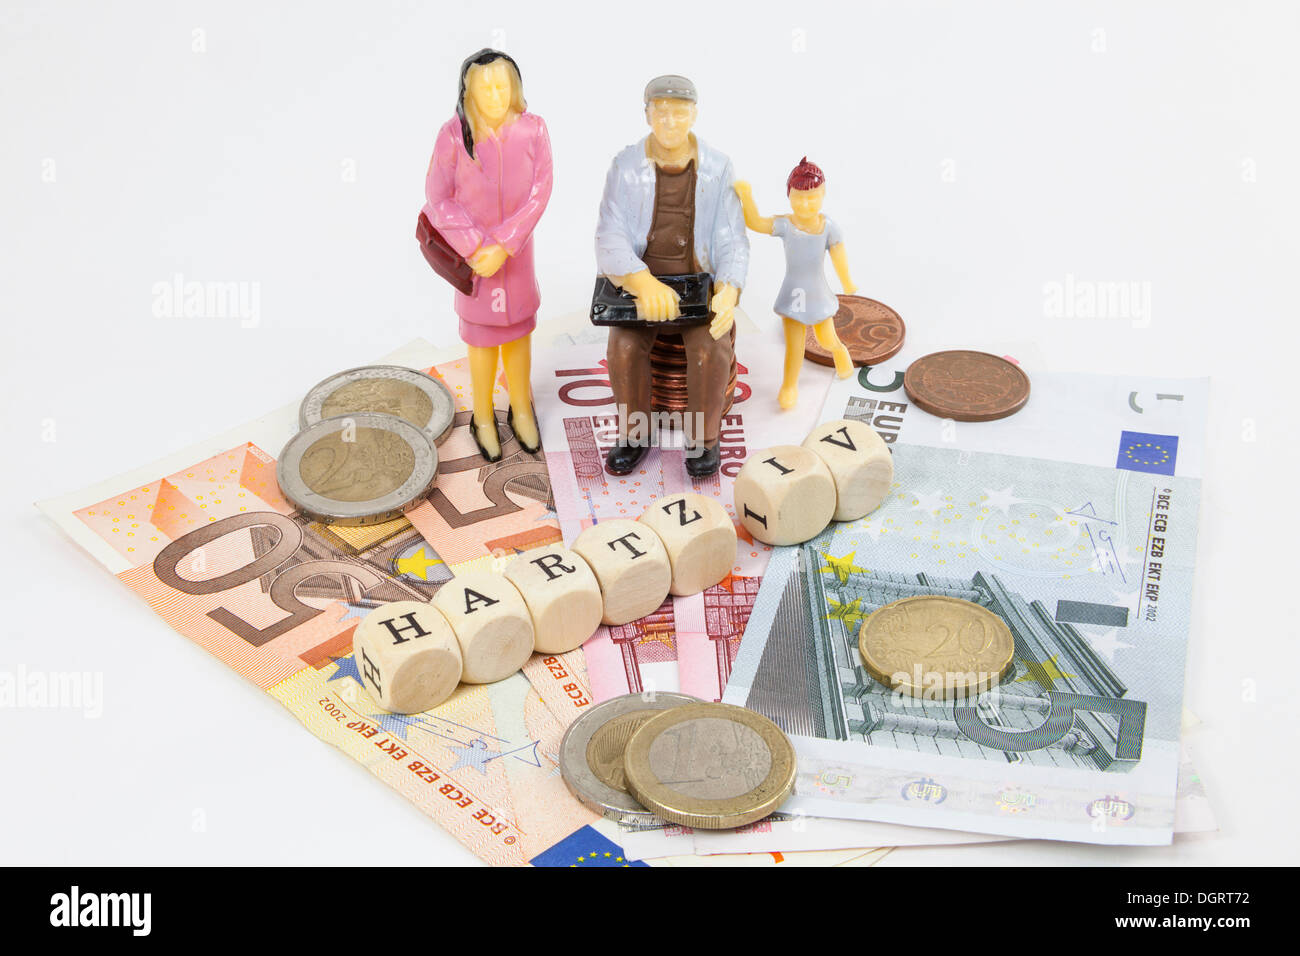 Le figure in miniatura di un gruppo di lavoro di classe famiglia, le banconote in euro, lettera cubi formanti la parola 'Hartz IV", Tedesco il sostegno al reddito Foto Stock